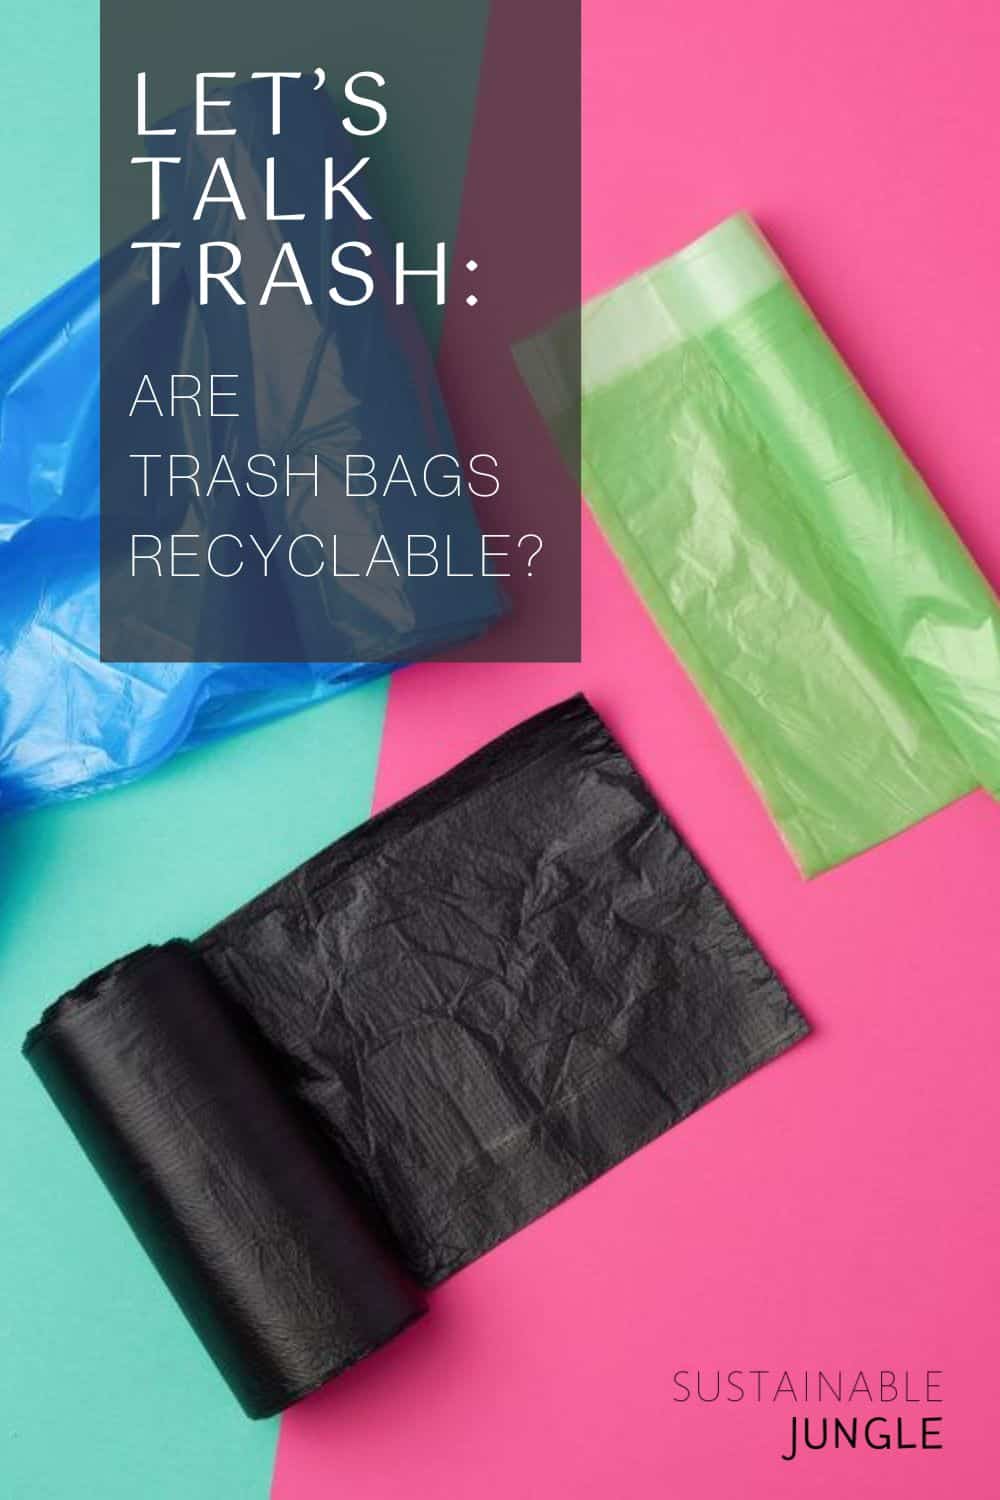 让我们谈谈垃圾:垃圾袋是可回收的吗?图片来源:nndanko Getty Images on Canva Pro #垃圾袋可回收#垃圾袋可回收#塑料垃圾袋不可回收#可持续丛林